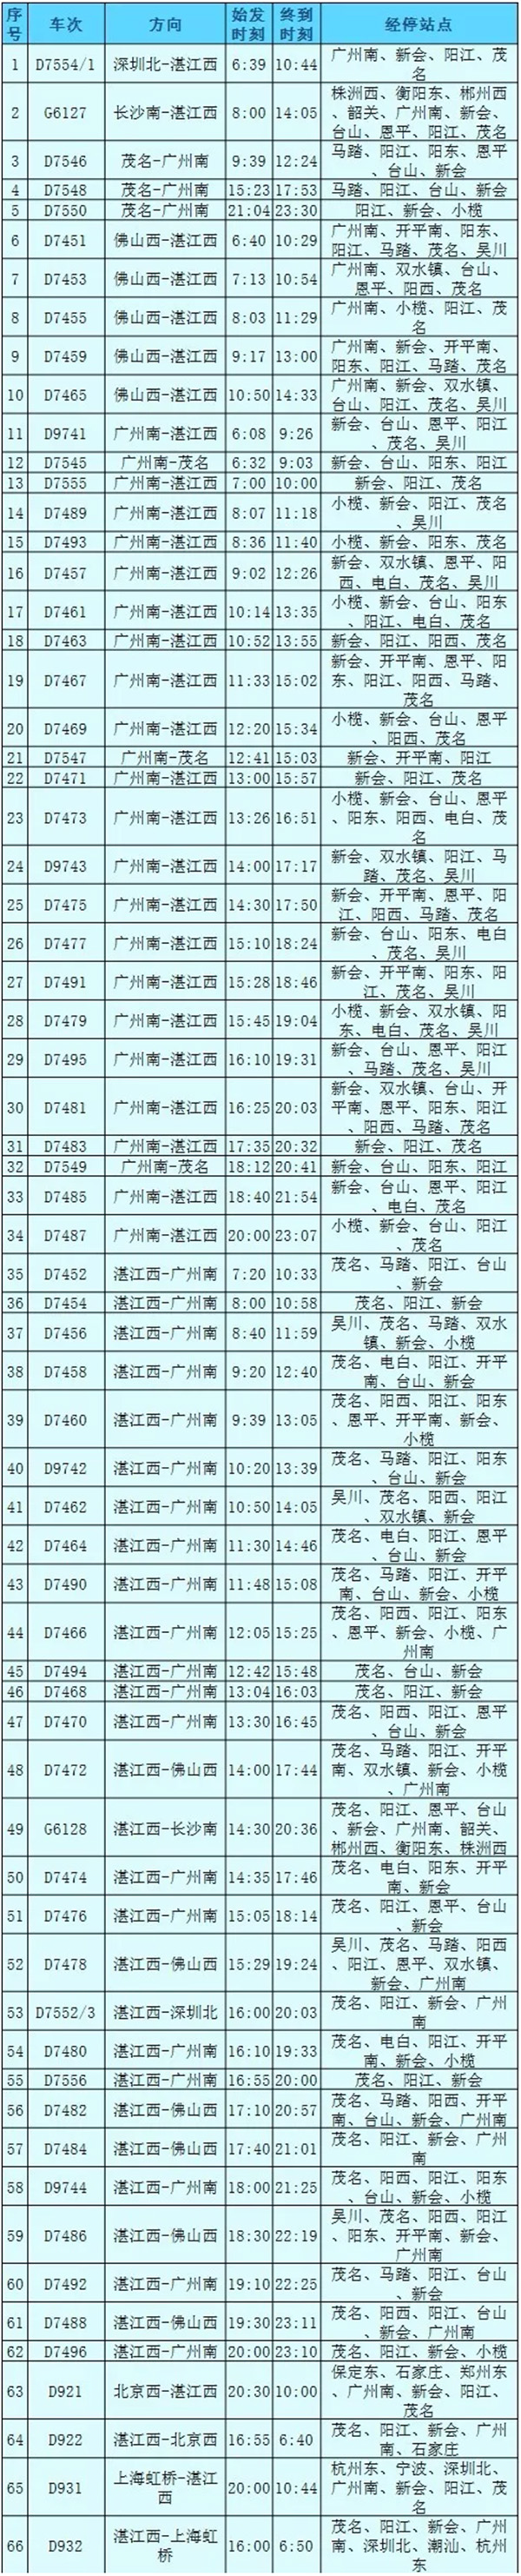 江湛铁路将于7月1日开通运营，开通初期实行3种折扣票价